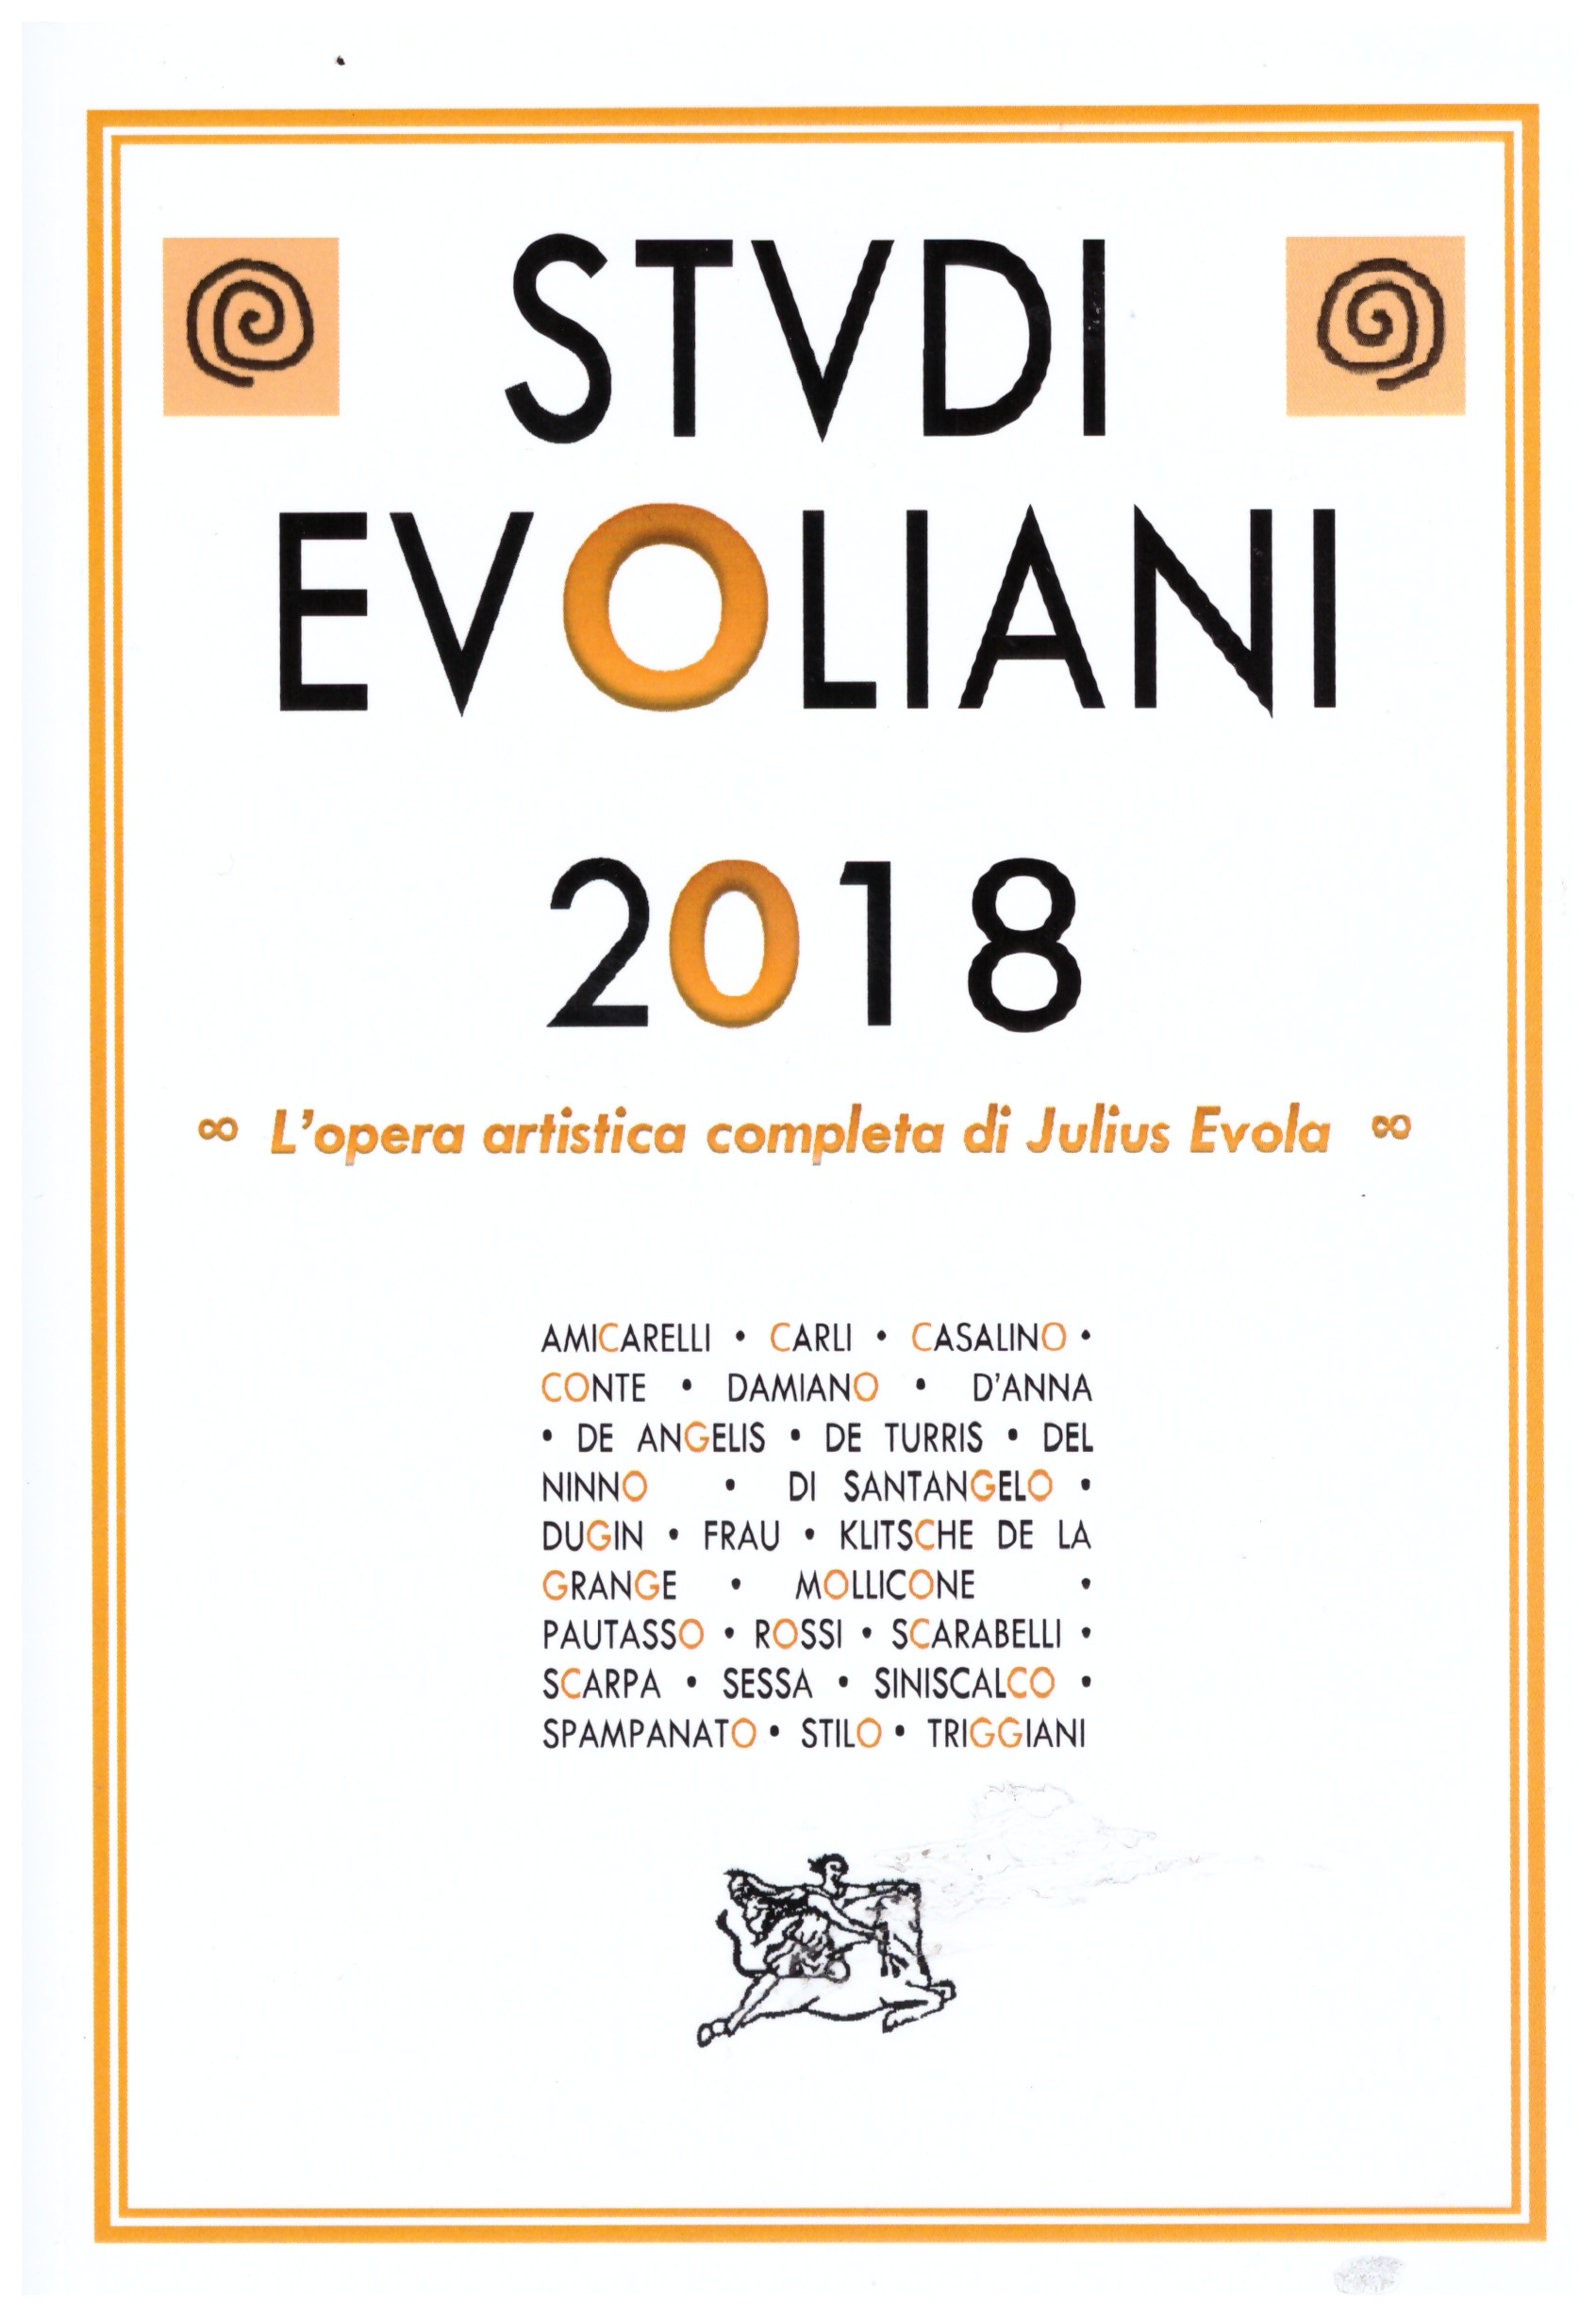 “La poesia di Evola come testo sconfinante” di Vitaldo Conte